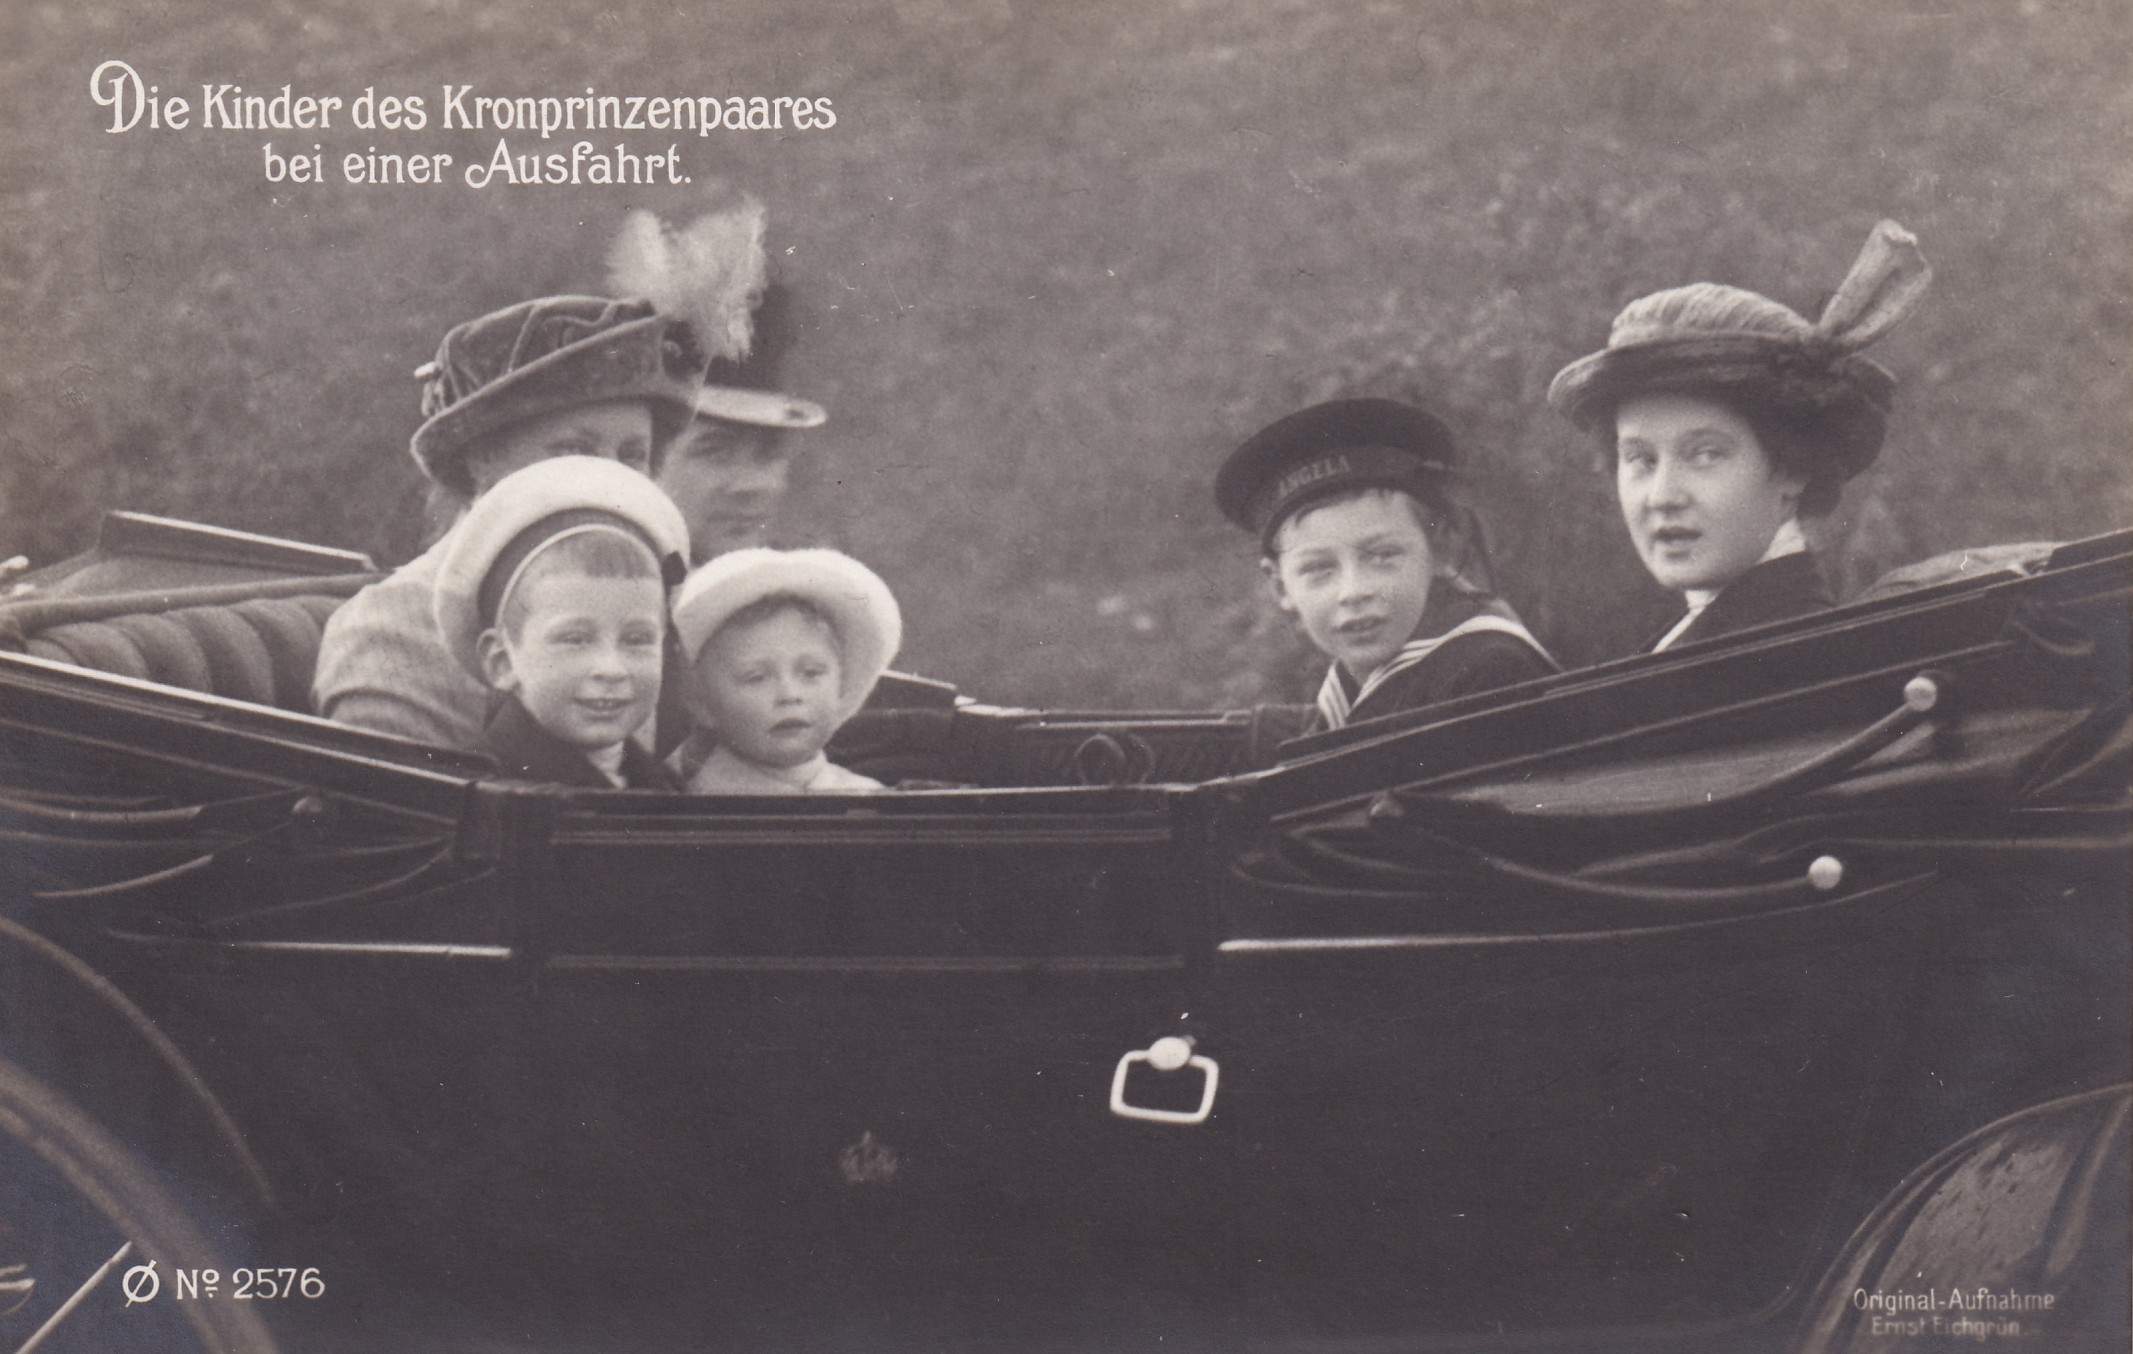 Bildpostkarte mit drei Söhnen des Kronprinzenpaares in einer Kutsche, 1913 (Schloß Wernigerode GmbH RR-F)